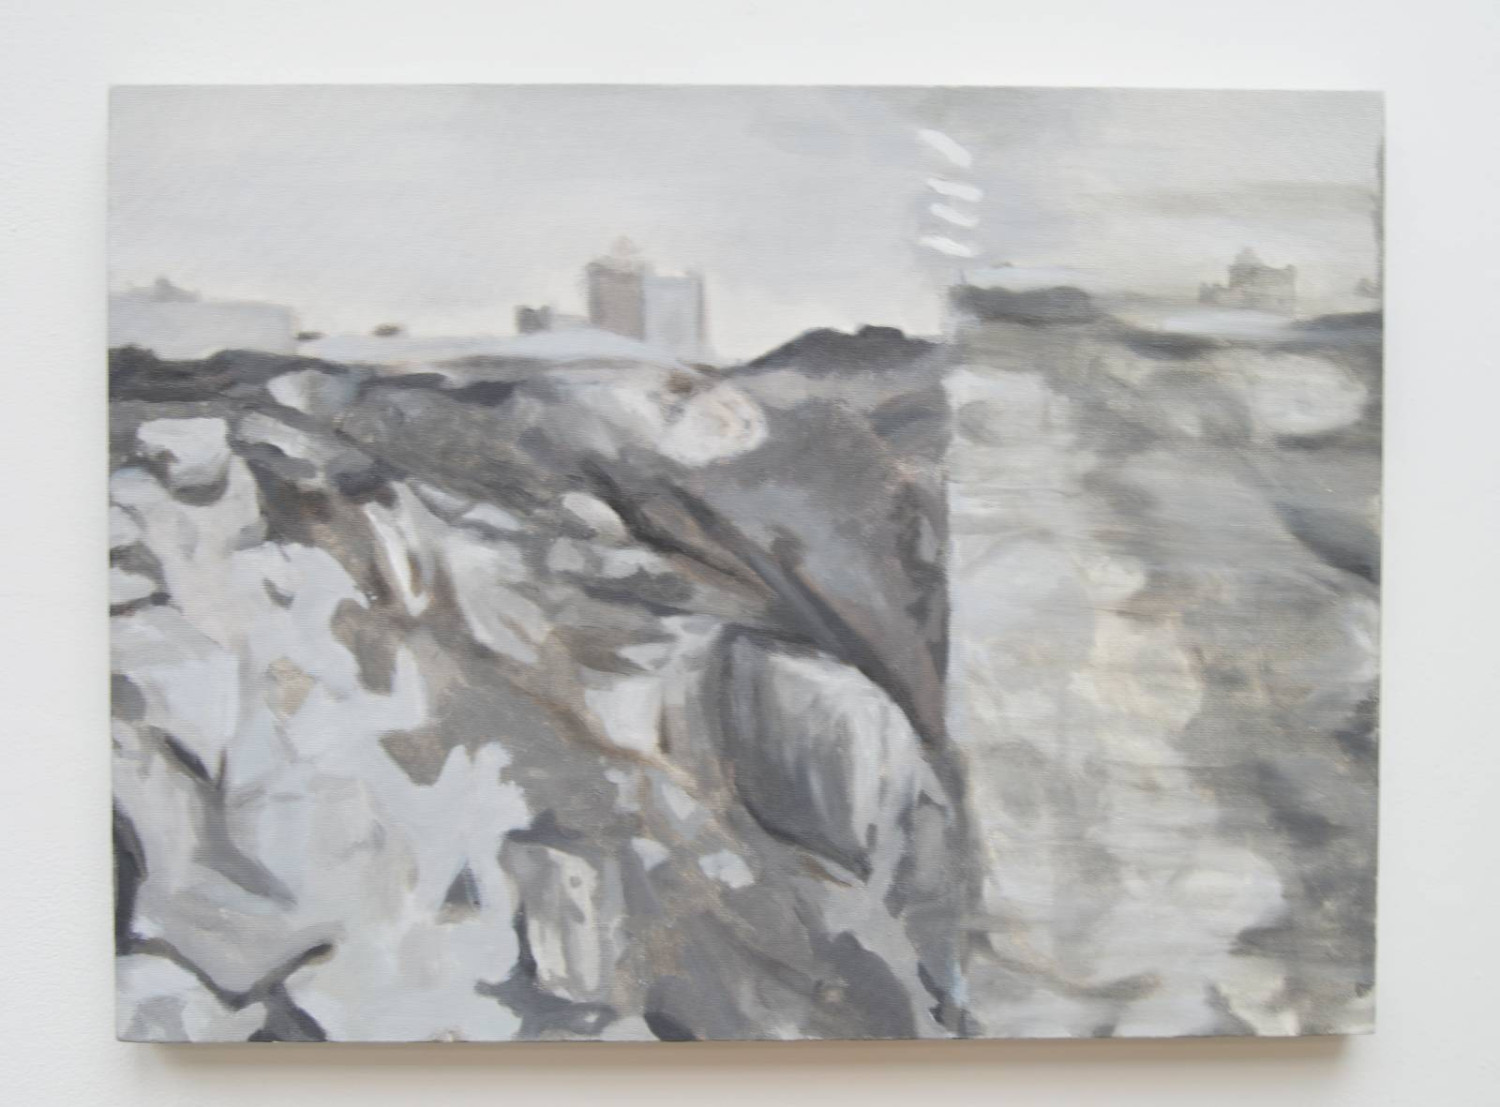 *Dalkey Quarry – Past*, oil on canvas, 60 x 80cm